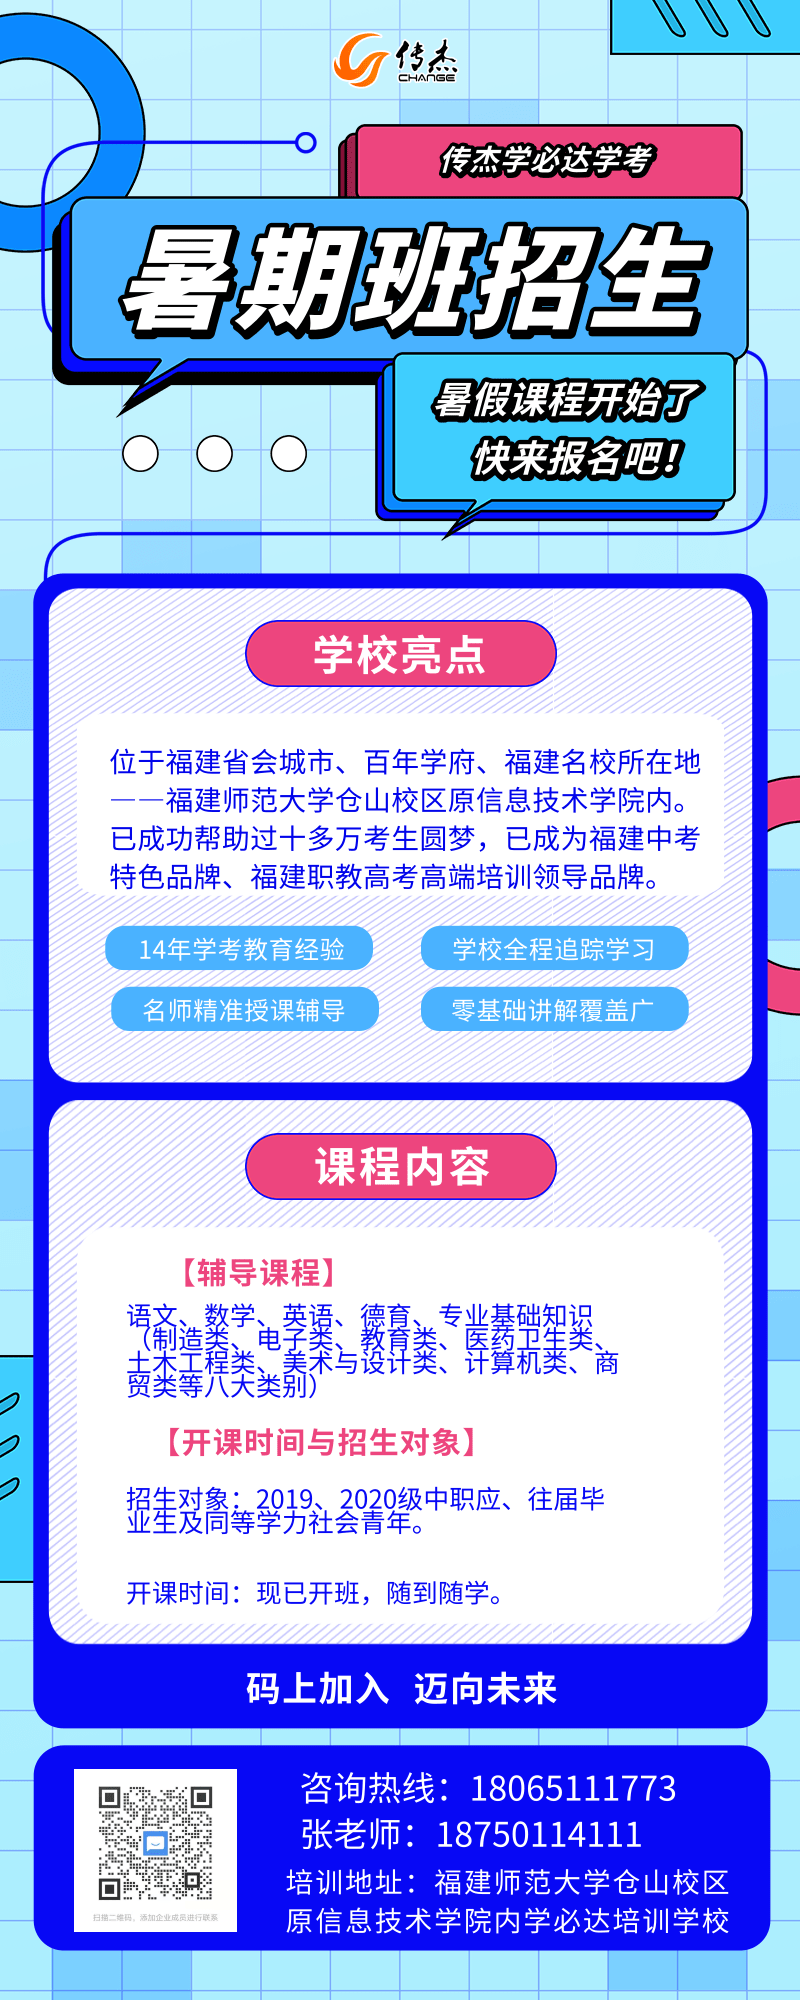 线描插画K12暑期培训营销长图 (1).png